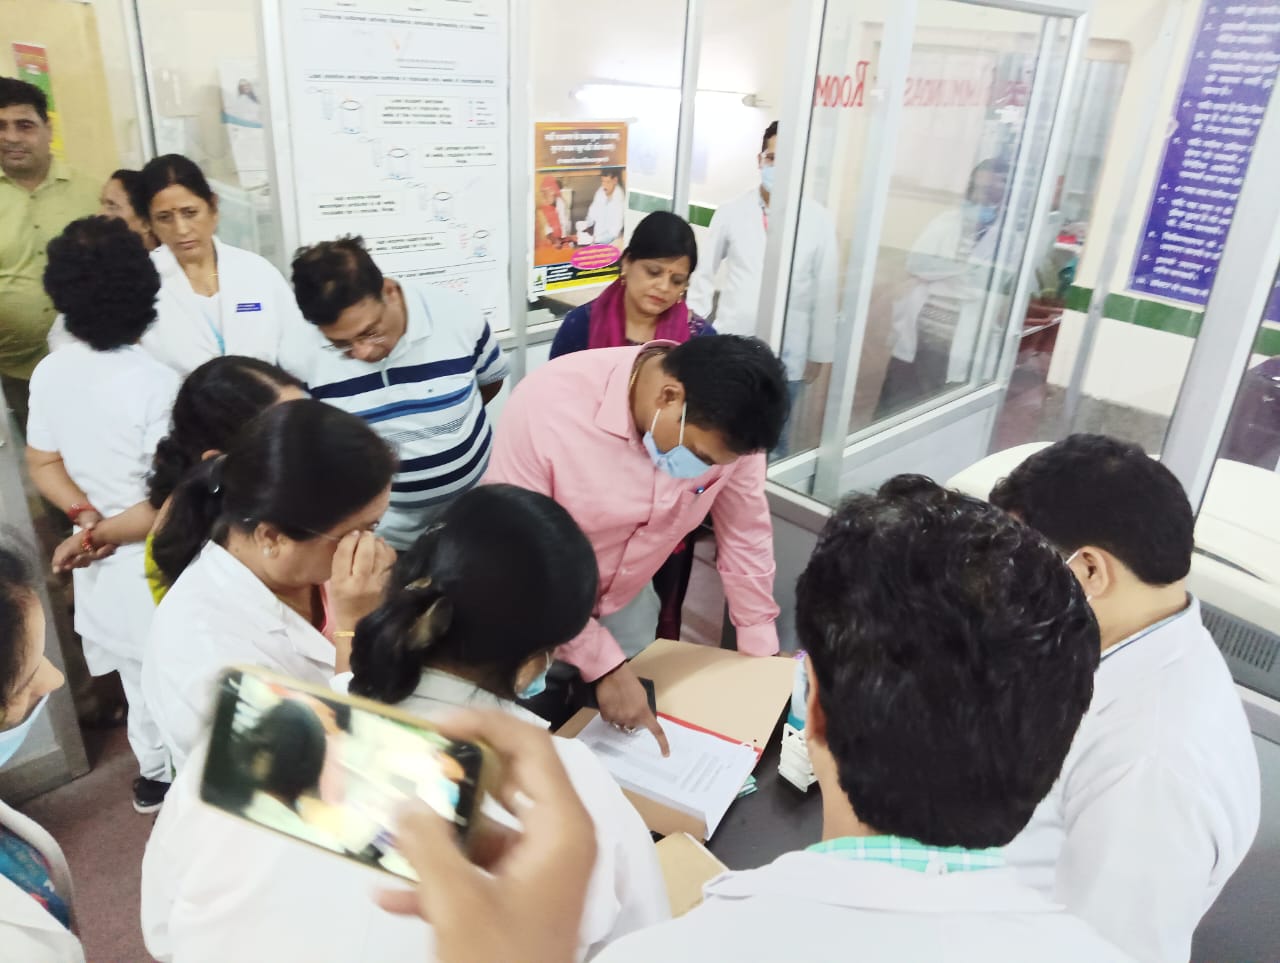 डेंगू मरीजों की जांच की धीमी गति पर स्वास्थ्य सचिव ने जतायी कड़ी नाराजगी, अधिकारियों को लगाई फटकार